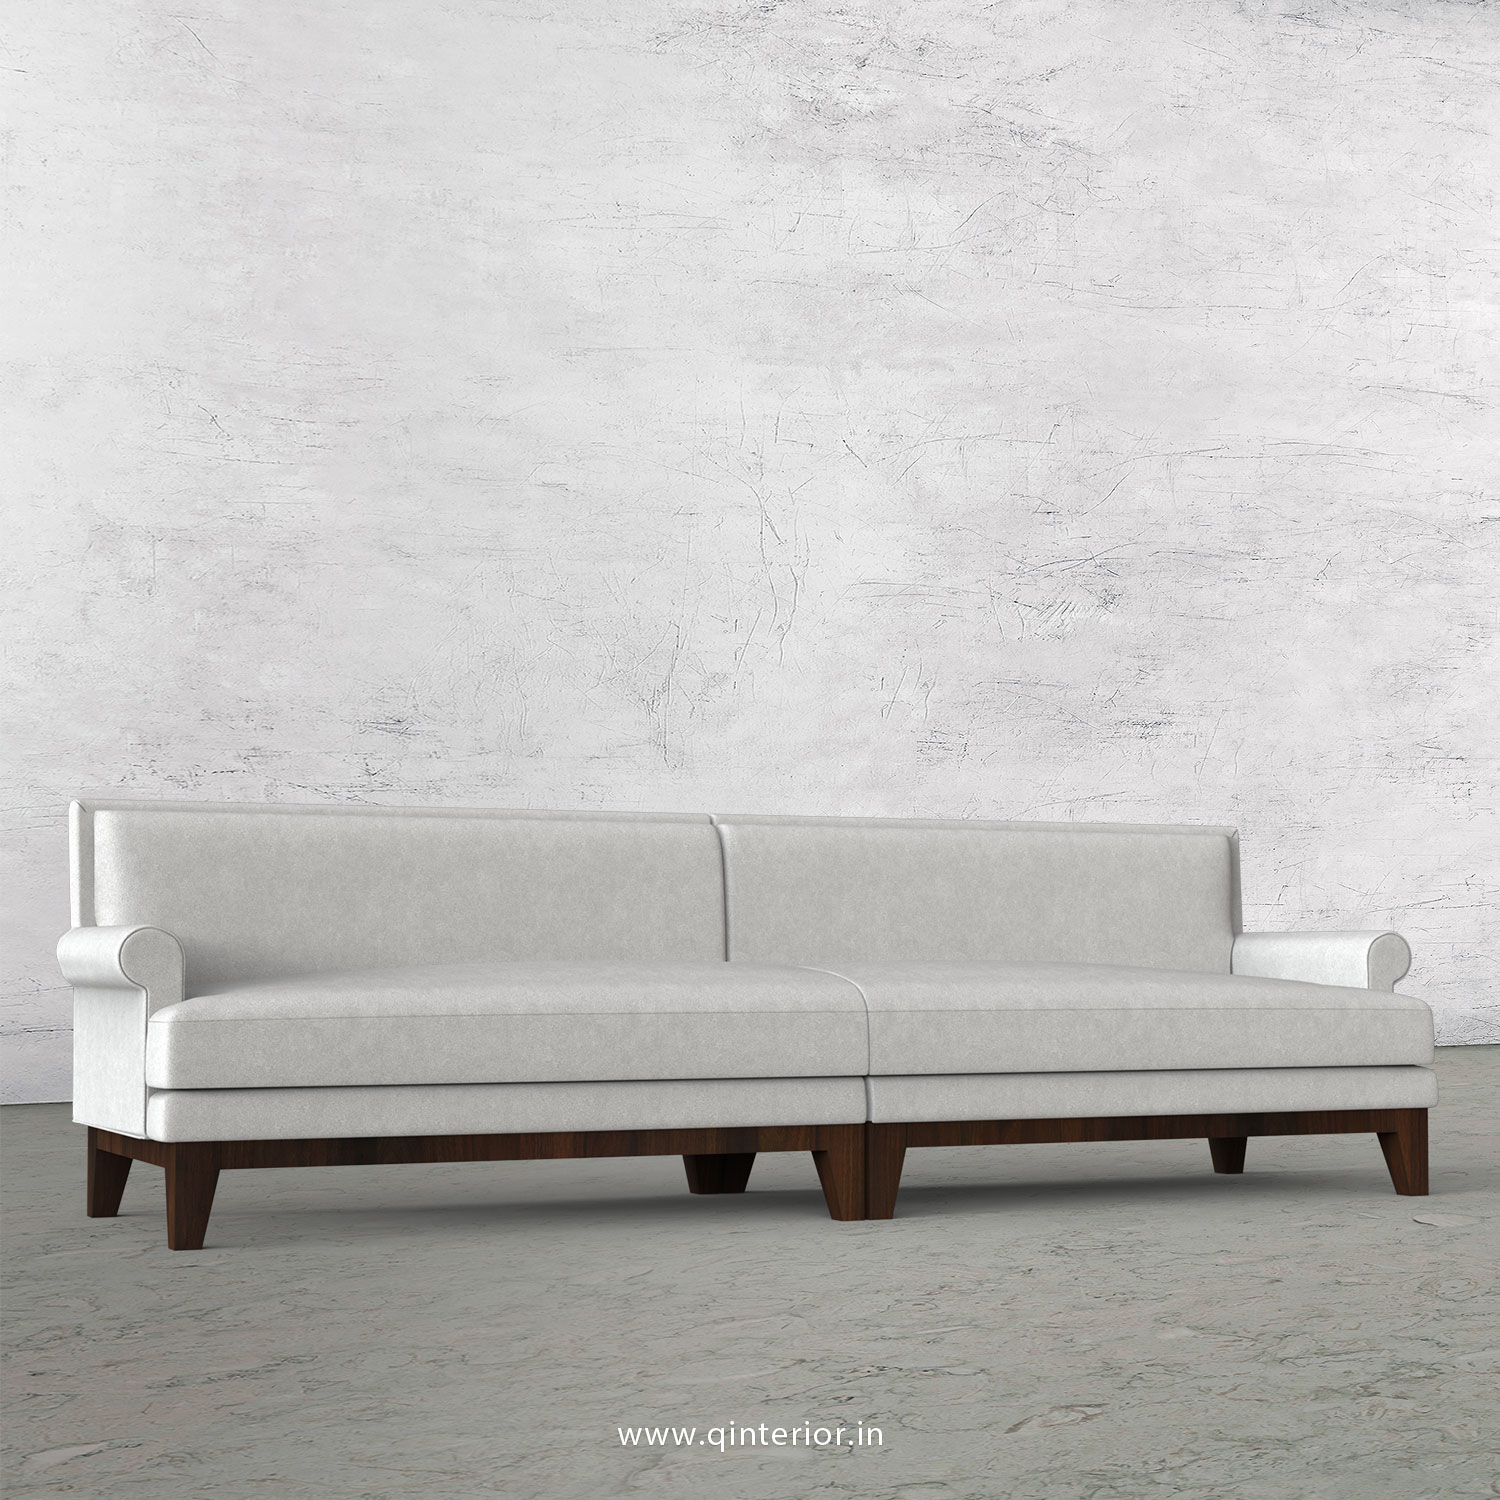 Aviana 4 Seater Sofa in Velvet Fabric - SFA001 VL06